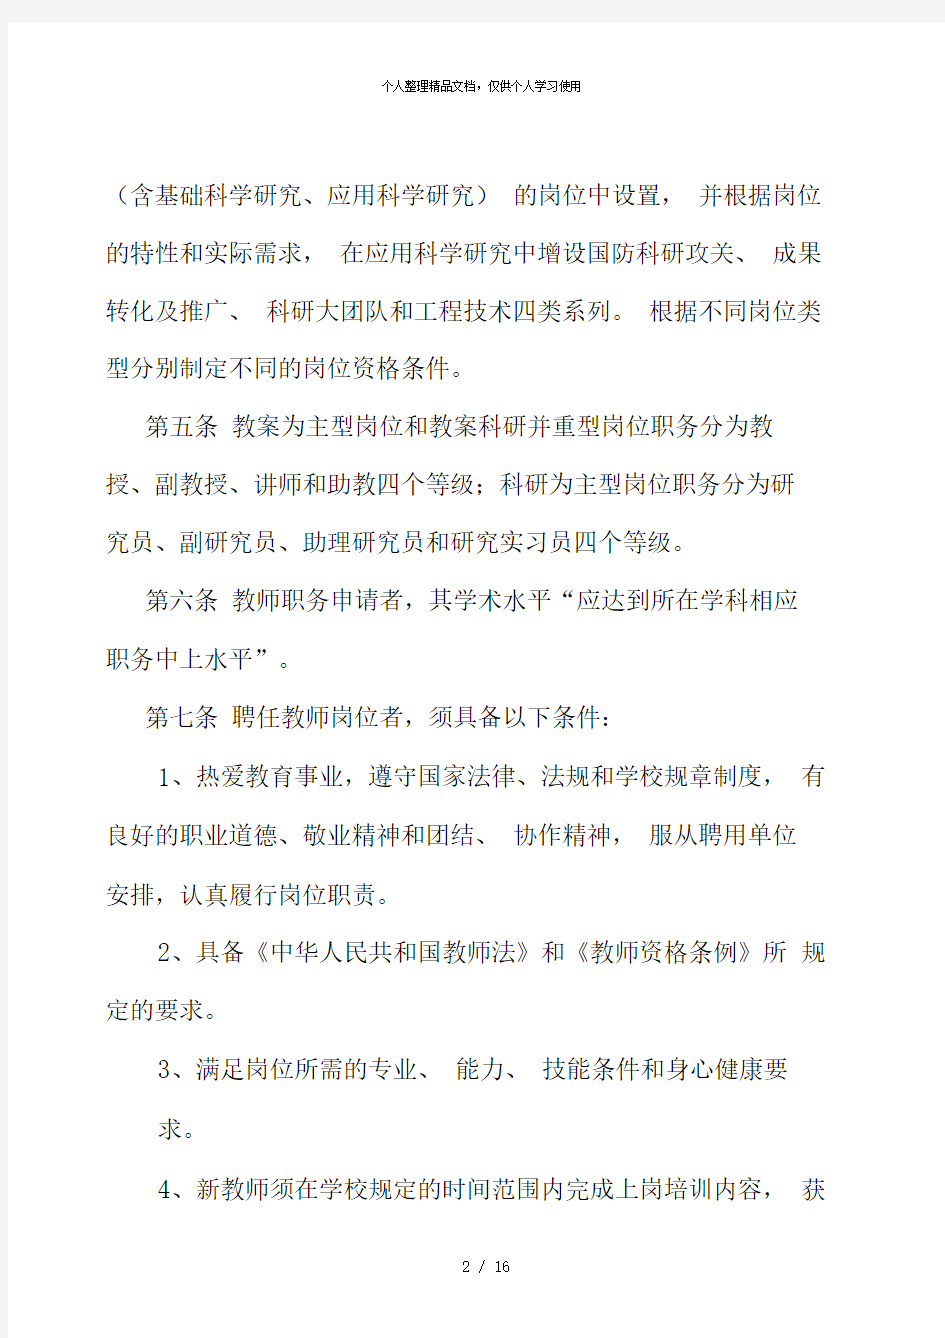 上海交通大学教师专业技术职务聘任实施办法